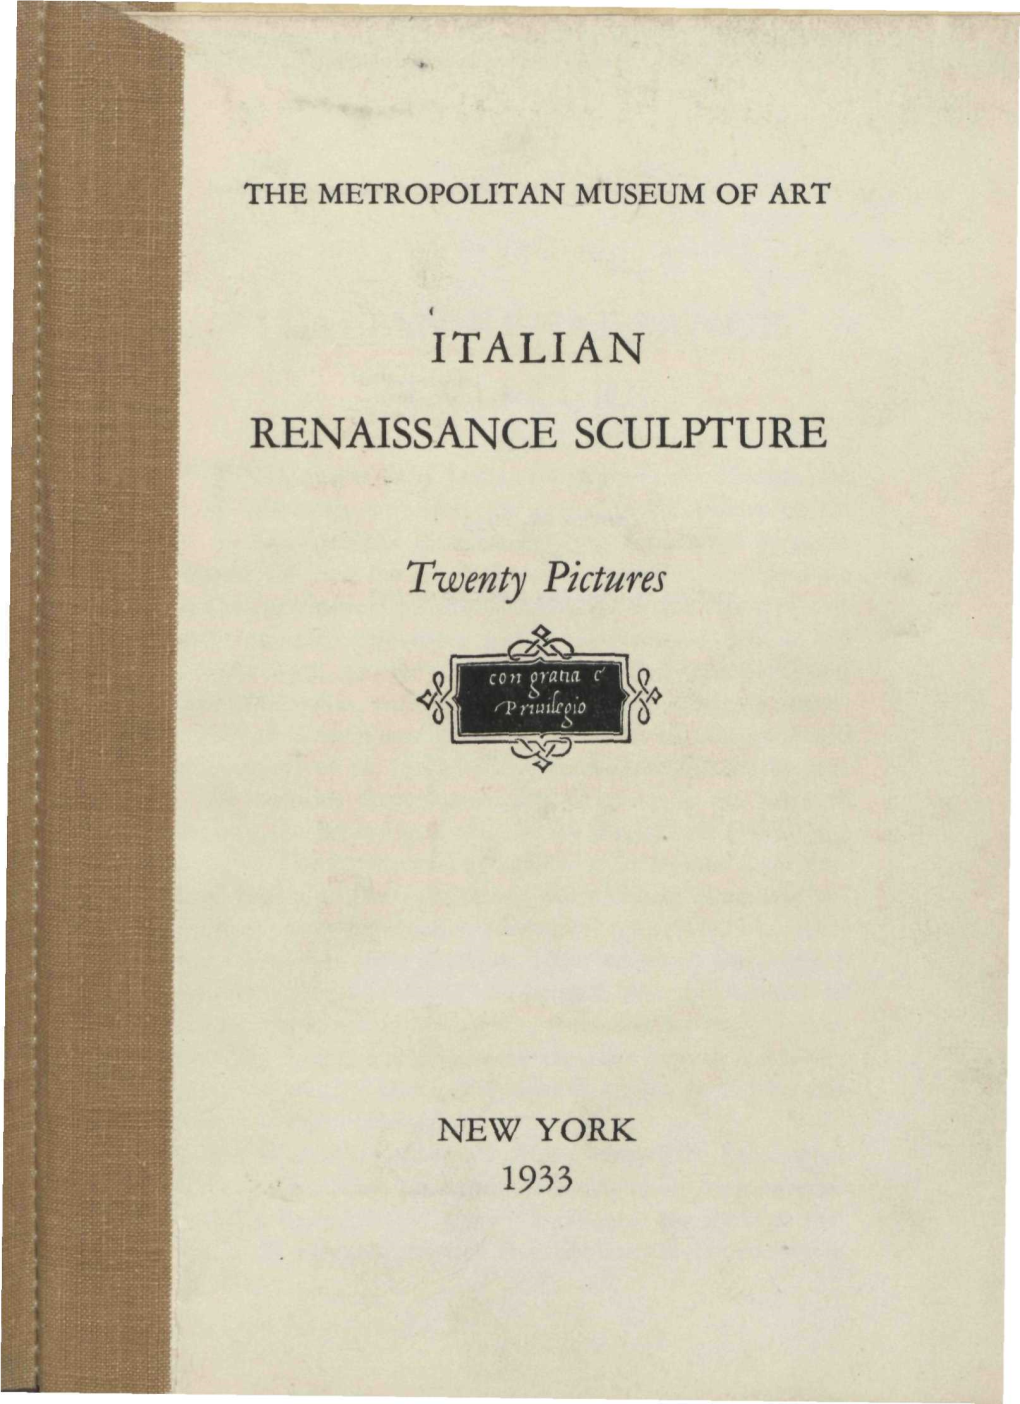 Italian Renaissance Sculpture